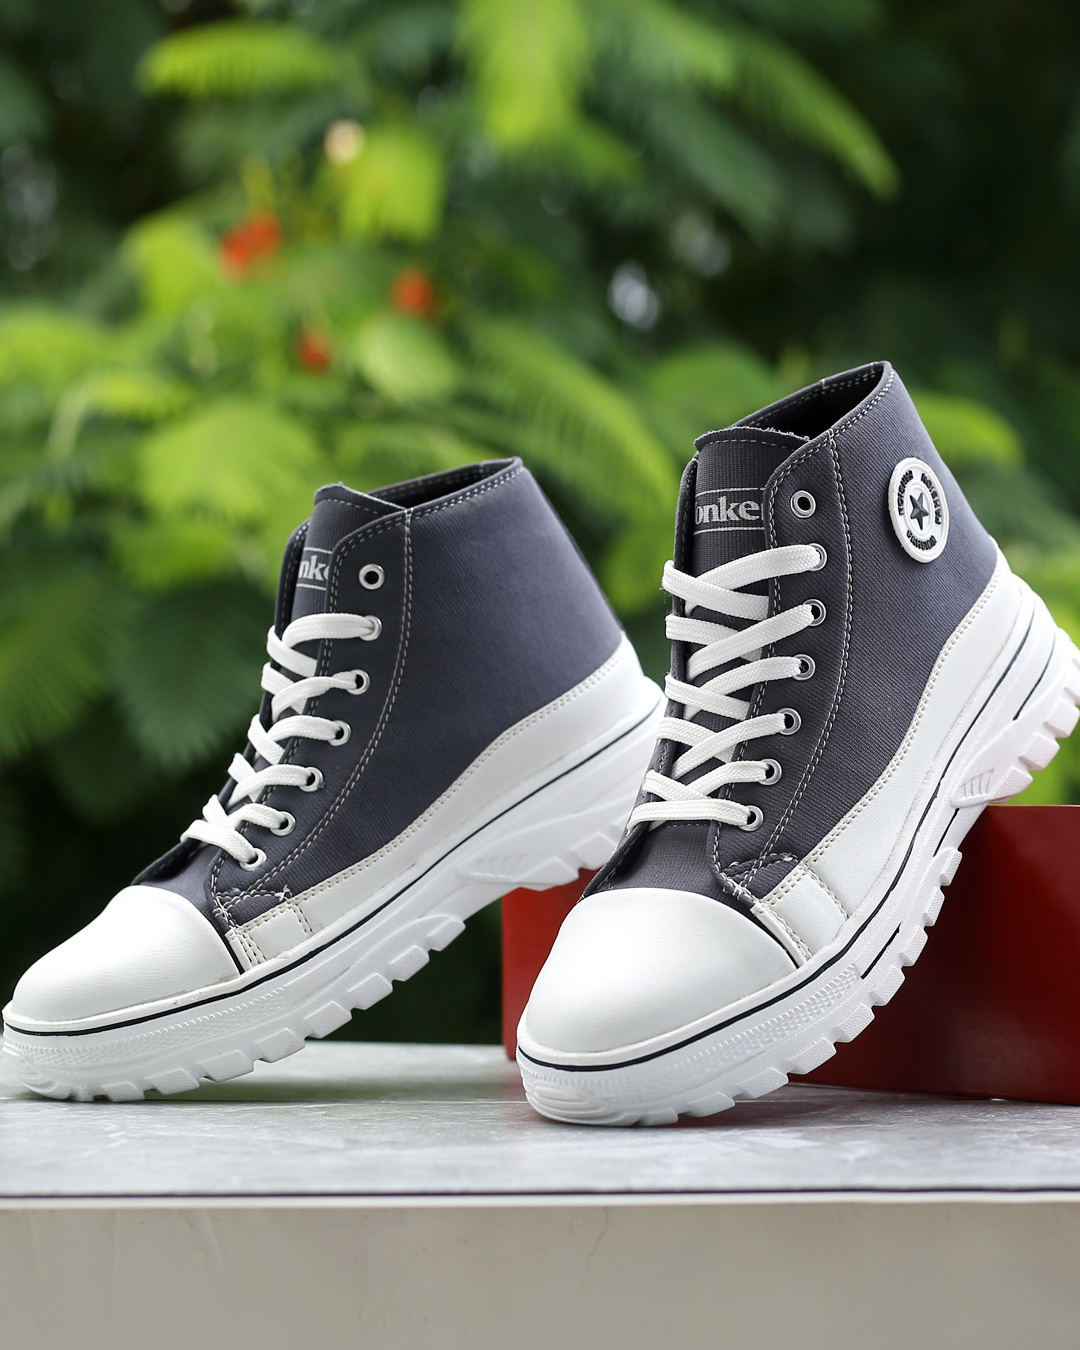 Buy Men's Grey High Top Sneakers Online in India at Bewakoof